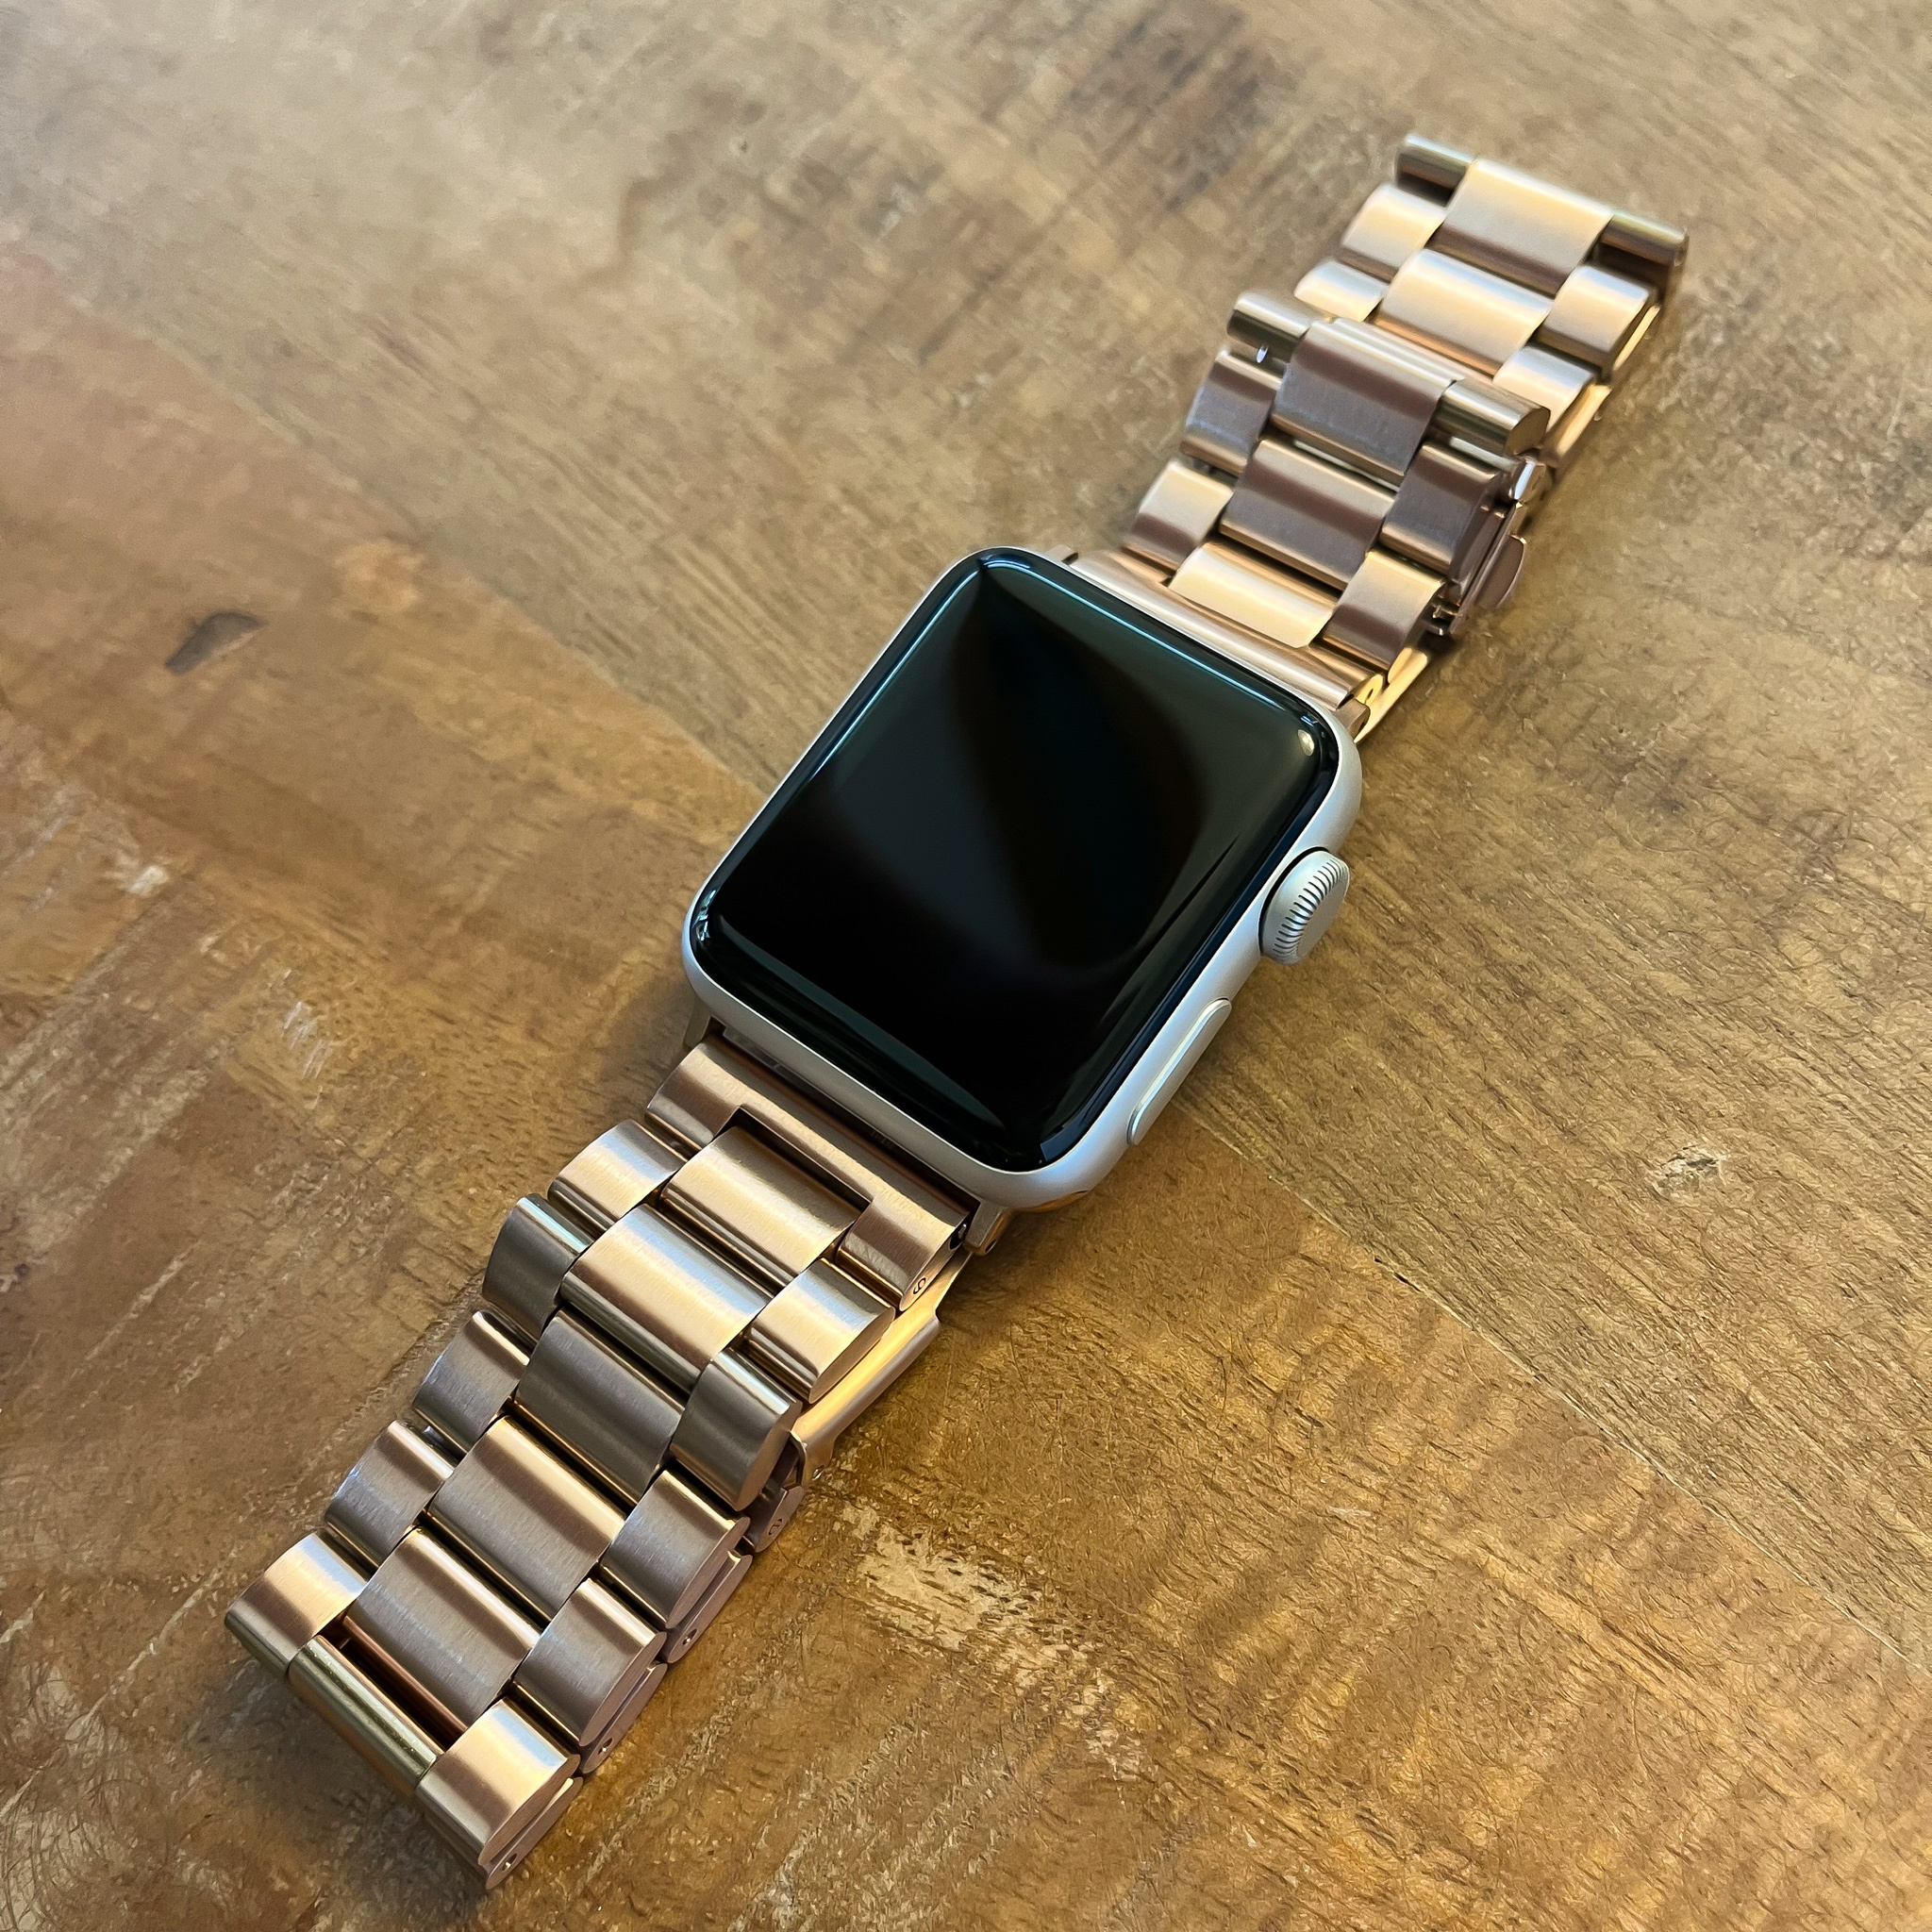 Correa de eslabones de acero con cuentas para el Apple Watch - oro rosa